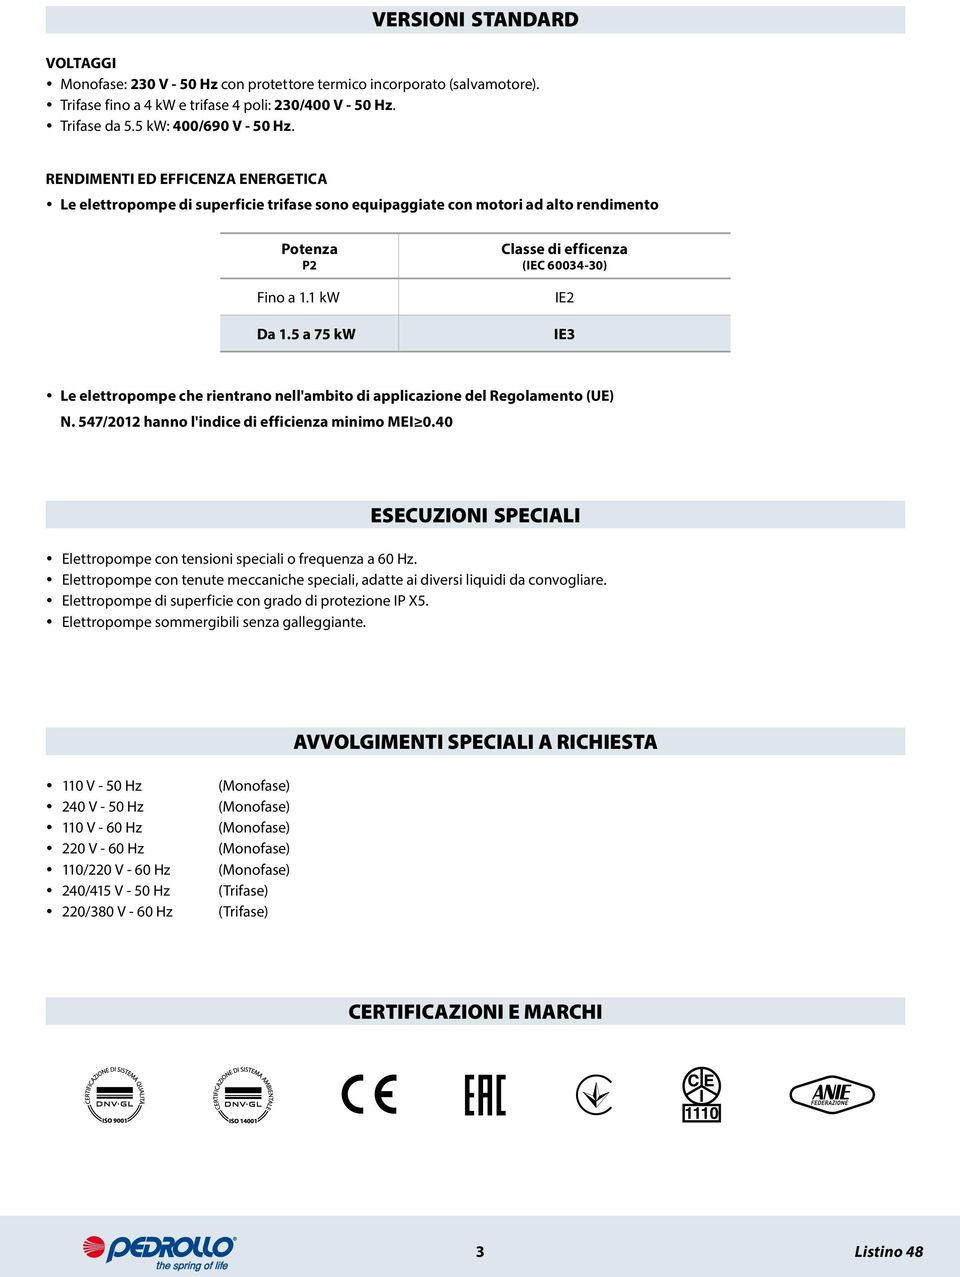 5 a 75 kw Classe di efficenza (IEC 60034-30) IE2 IE3 Le elettropompe che rientrano nell'ambito di applicazione del Regolamento (UE) N. 547/2012 hanno l'indice di efficienza minimo MEI 0.